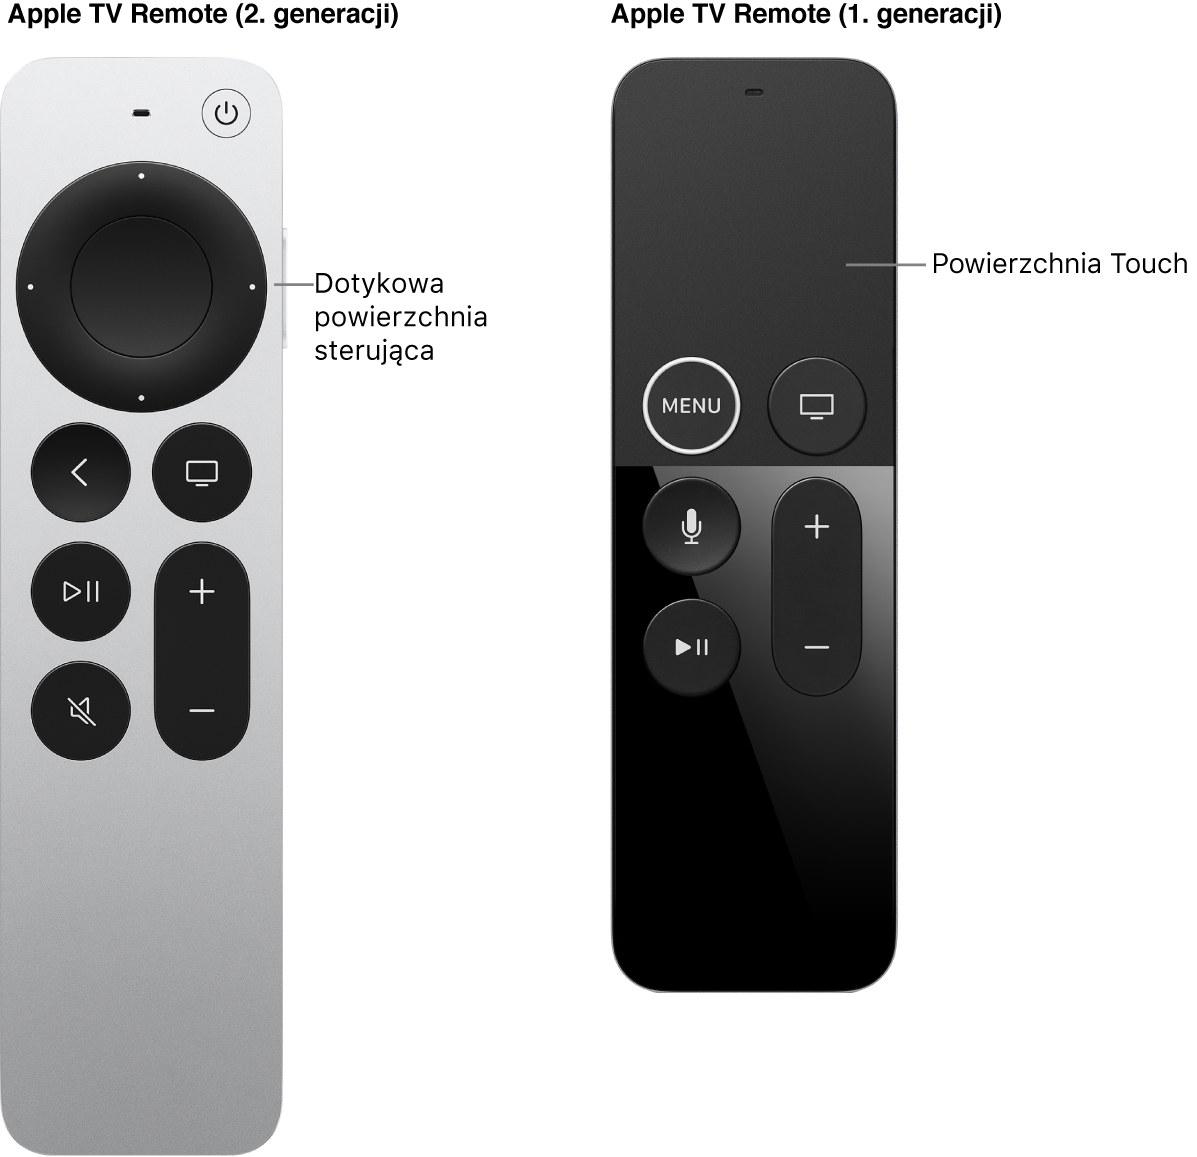 Pilot Apple TV Remote (2. i 3. generacji) z powierzchnią sterującą oraz pilot Apple TV Remote (1. generacji) z powierzchnią dotykową